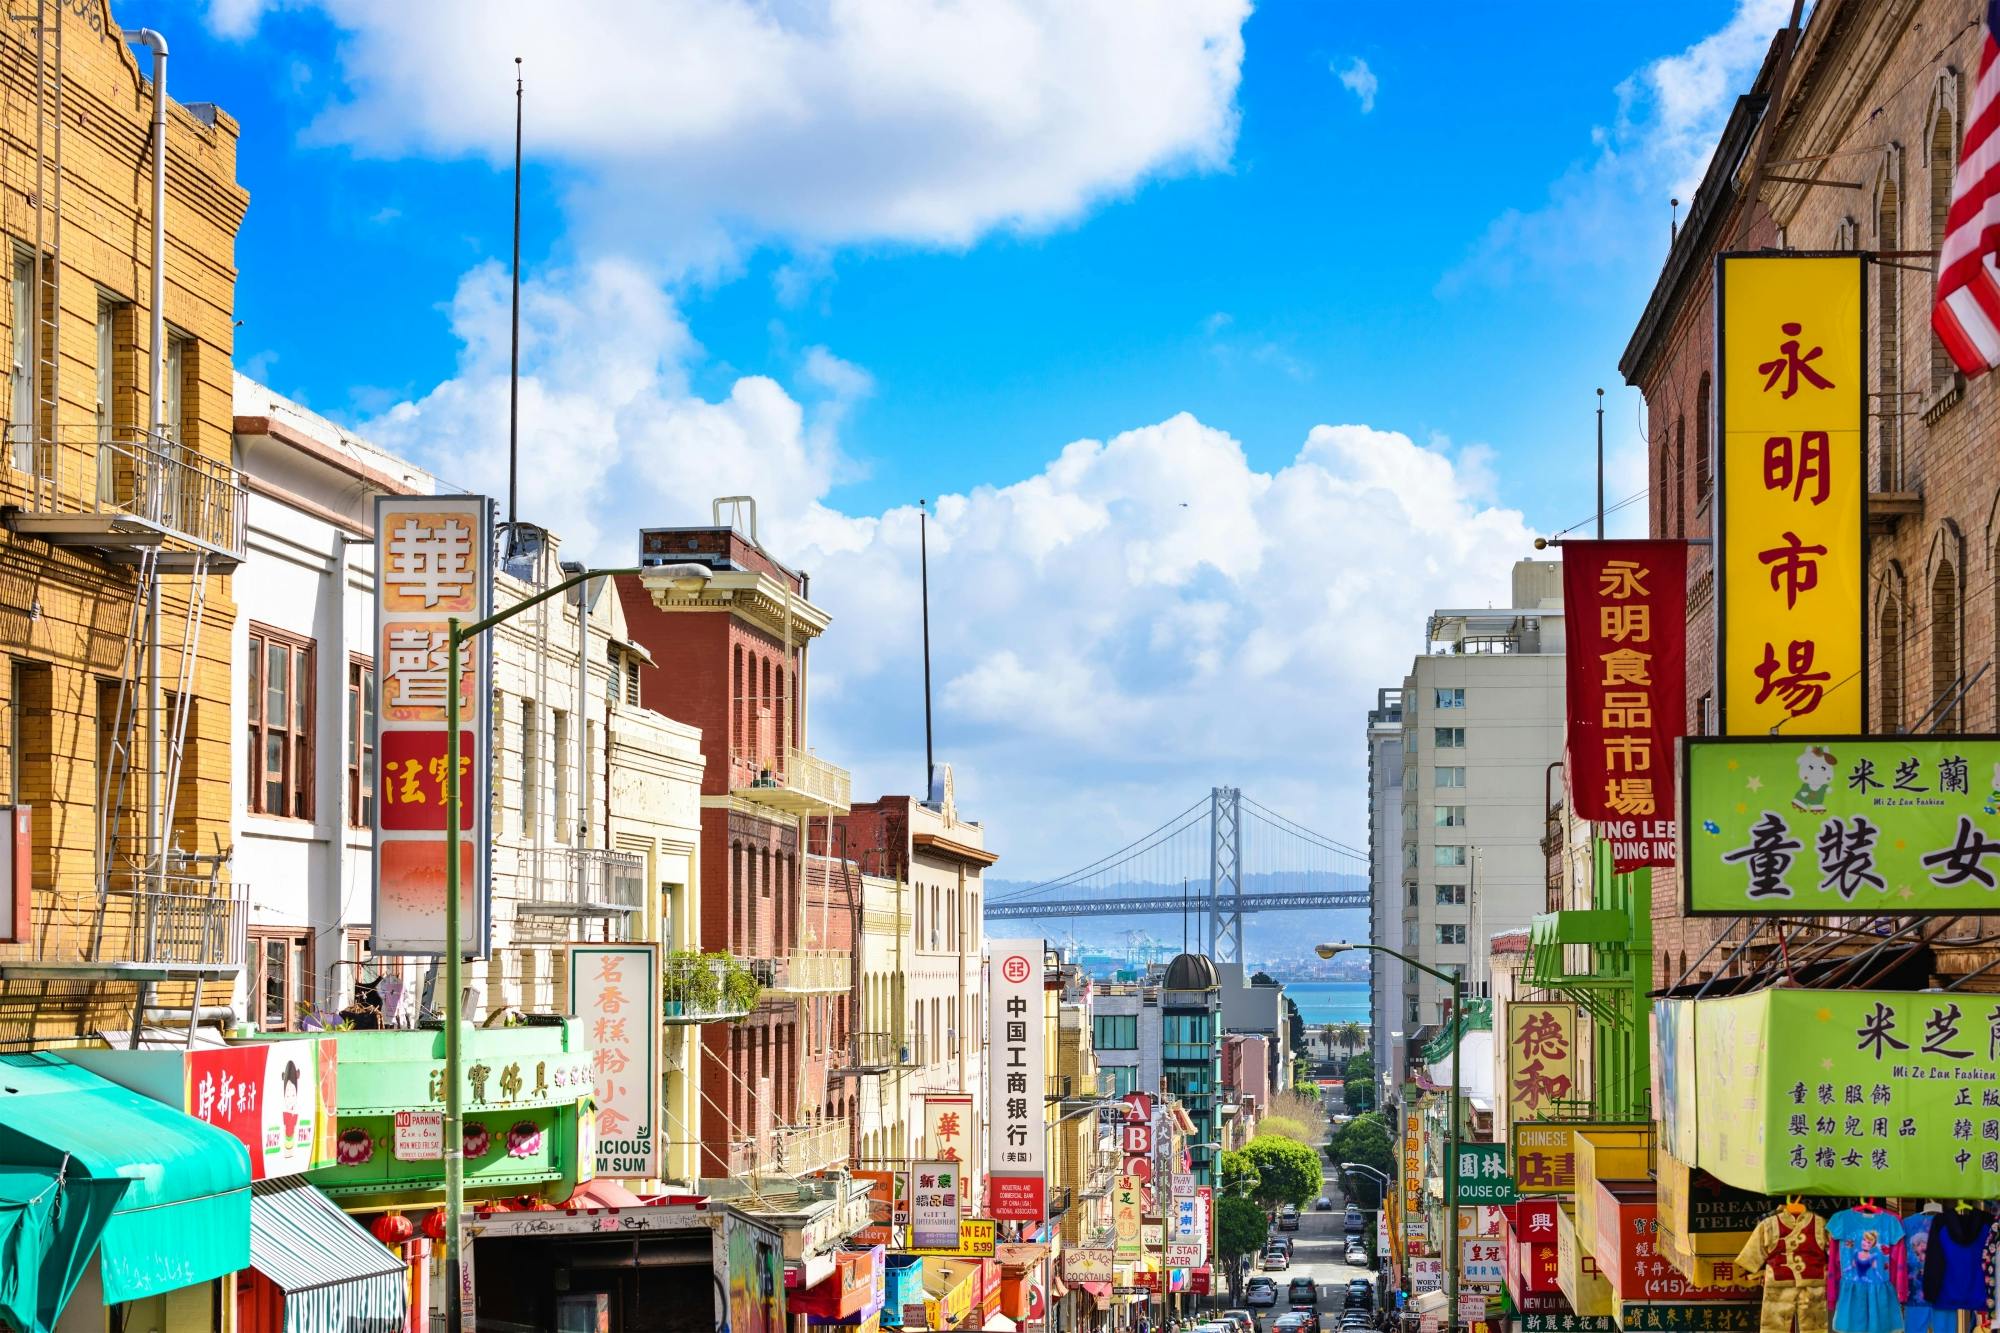 Visitez le quartier chinois de San Francisco dans le jeu d'exploration The Warrior Cat